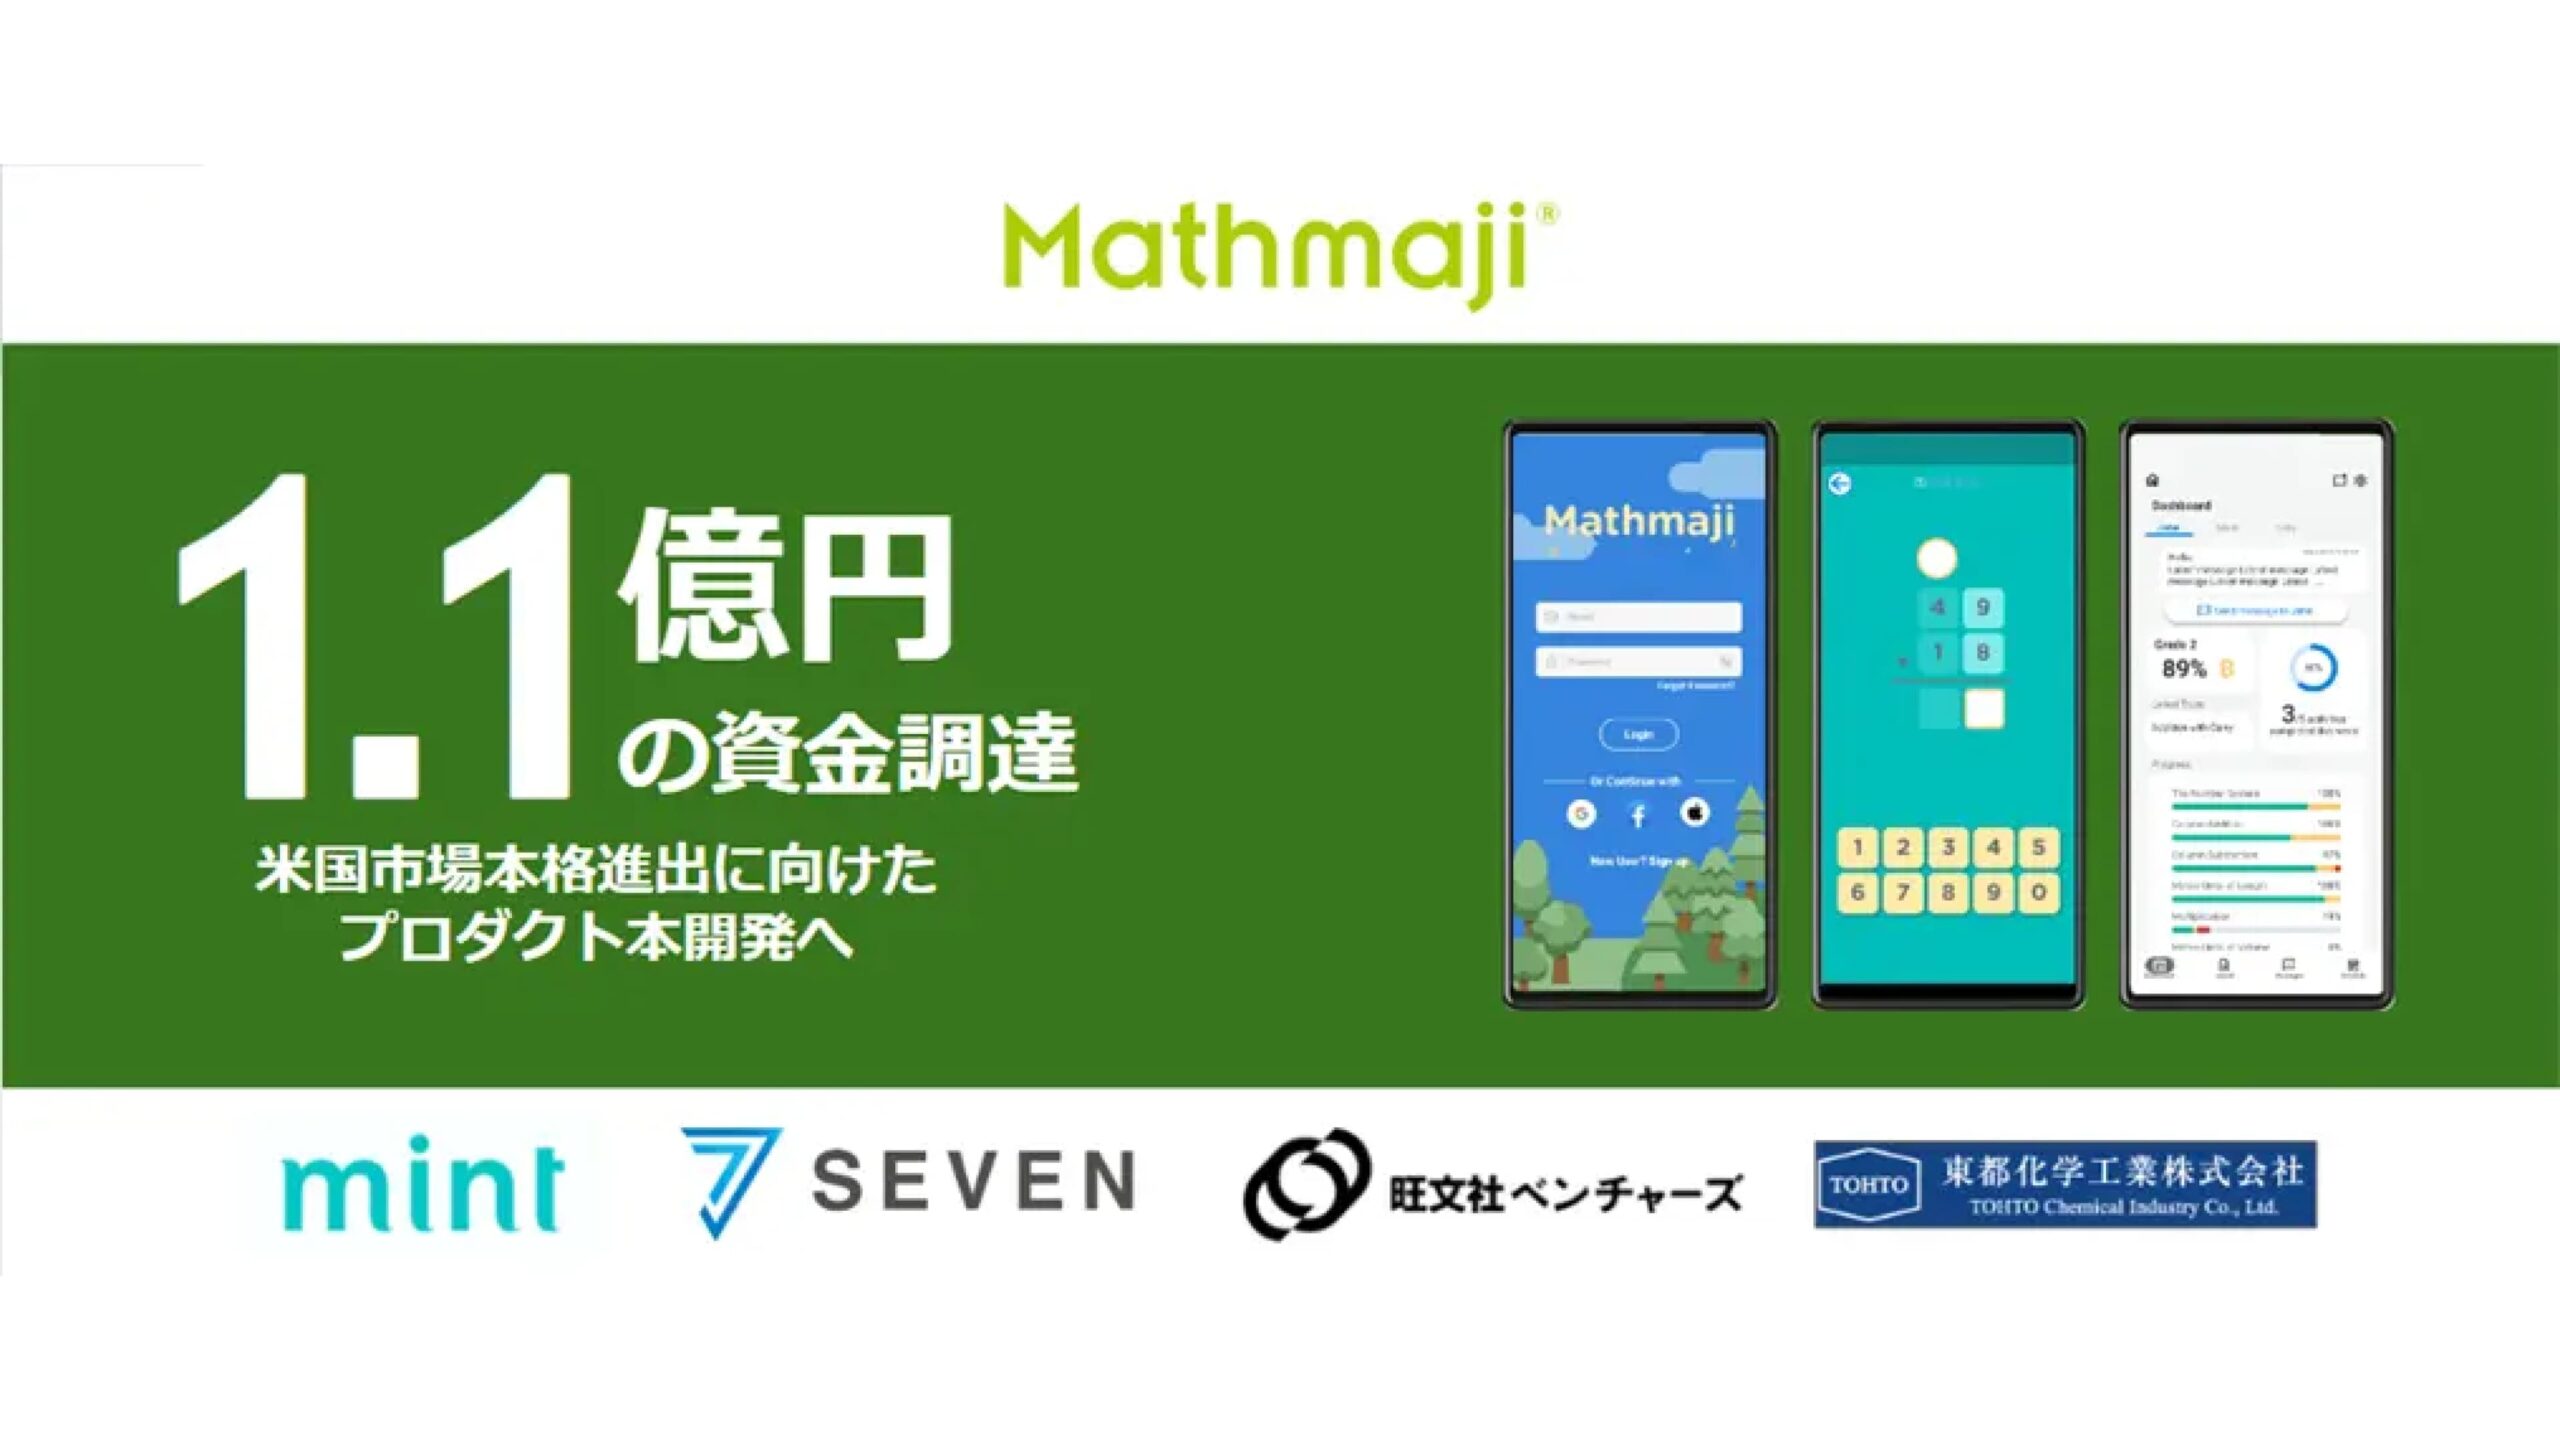 東京発・グローバル向け算数学習アプリの株式会社Mathmaji、mintらから1.1億円を調達——累積調達額は1.1億円に